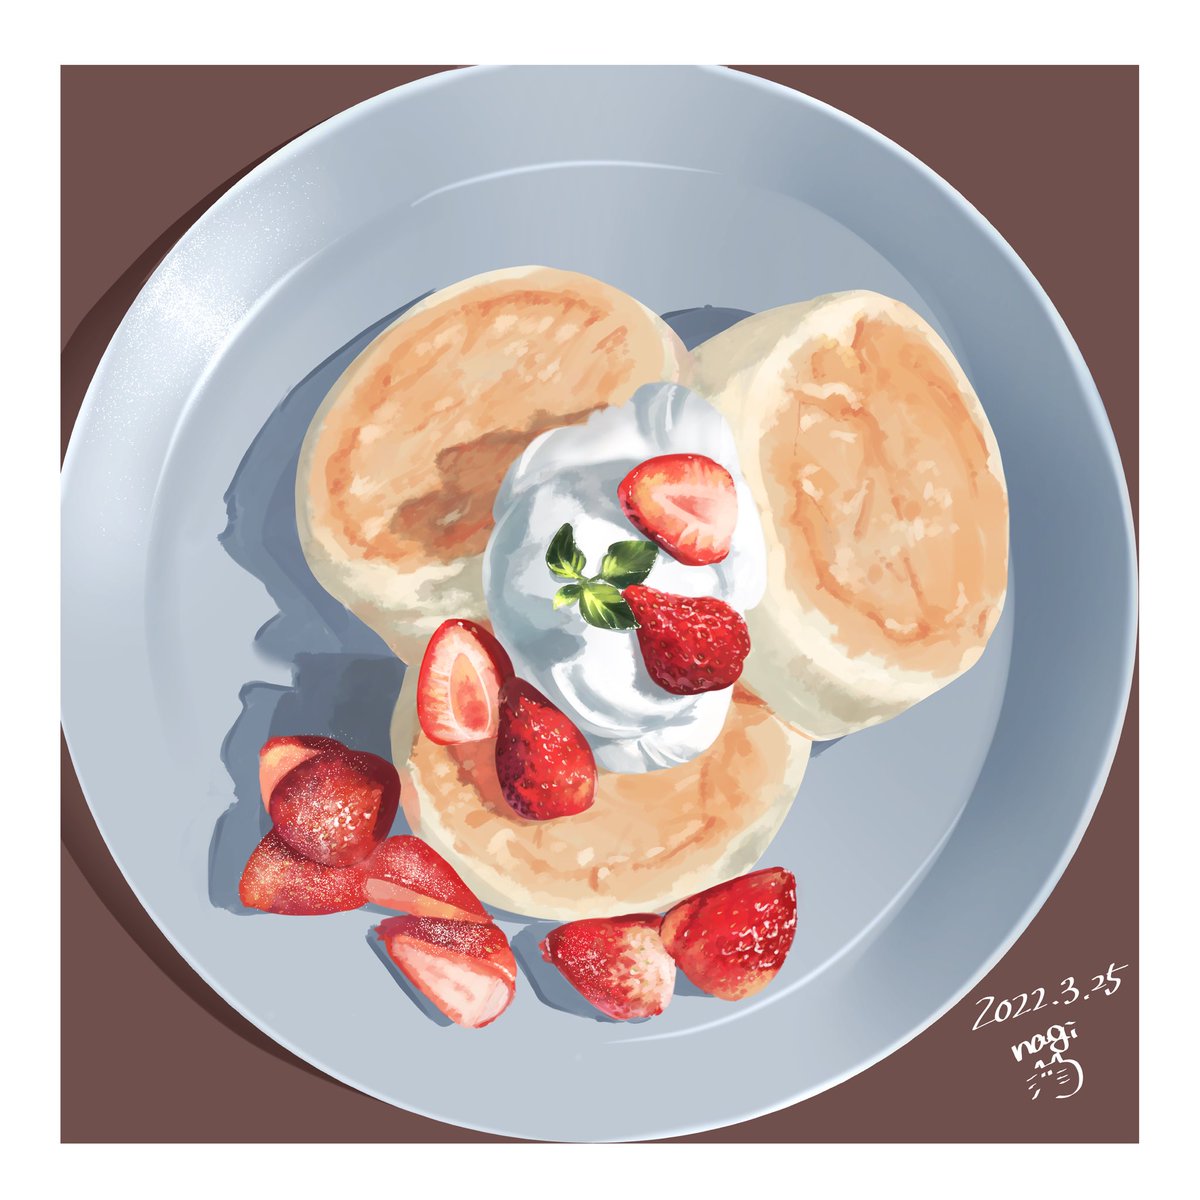 「おはようございます今日の一枚▼▽▼だいぶ前のパンケーキ模写美味しそうなものを描く」|なぎさ@ご依頼受付中(4月以降納期)のイラスト